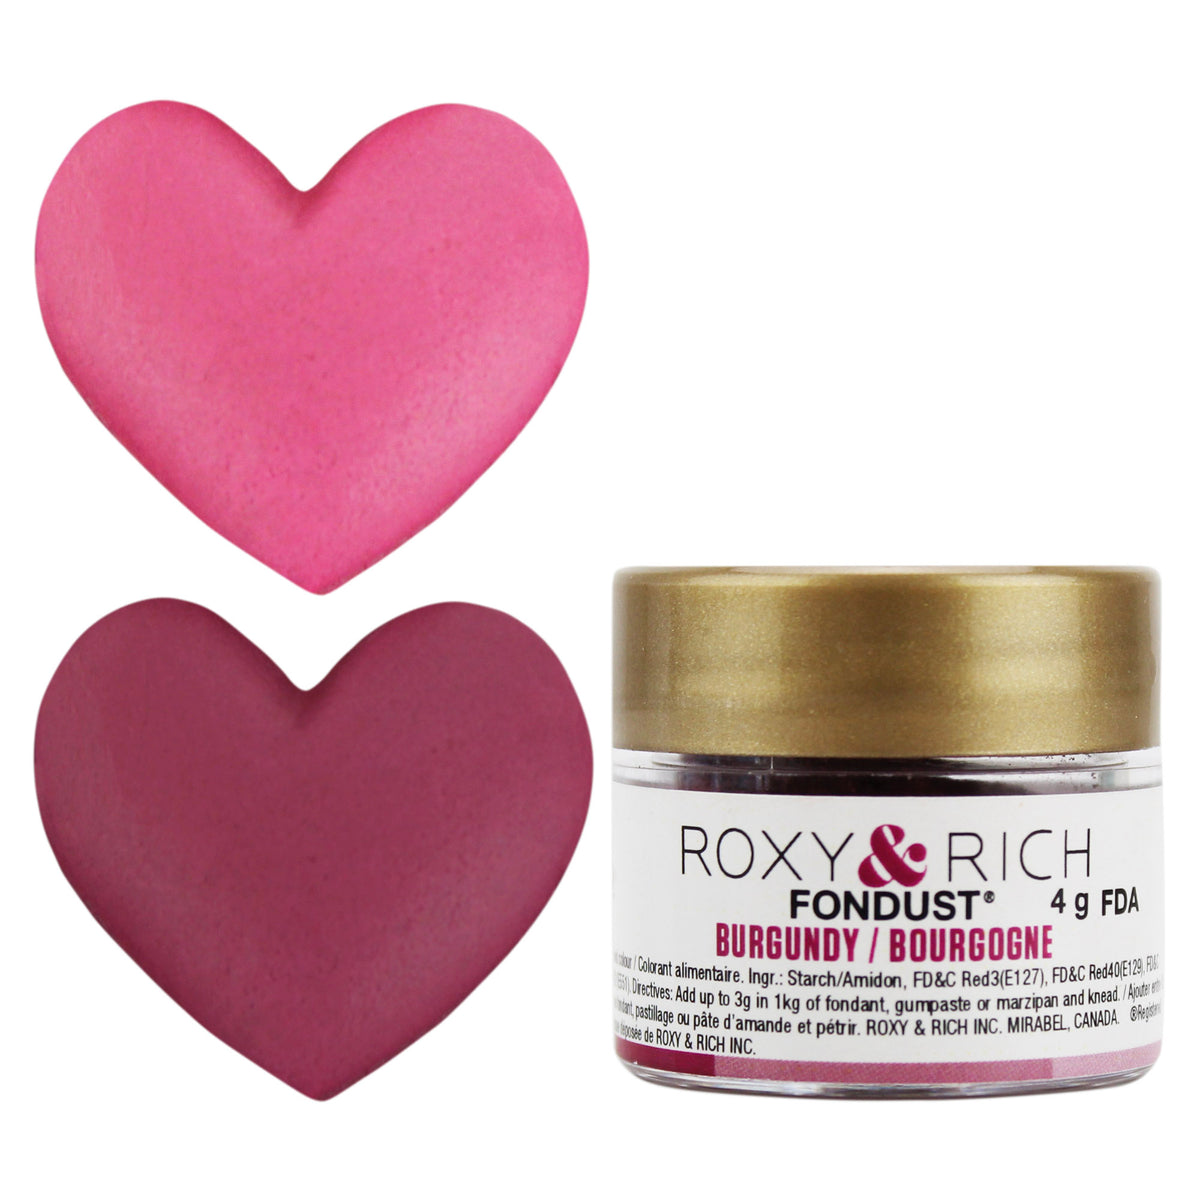 Burgundy Fondust Food Coloring Powder - Roxy & Rich